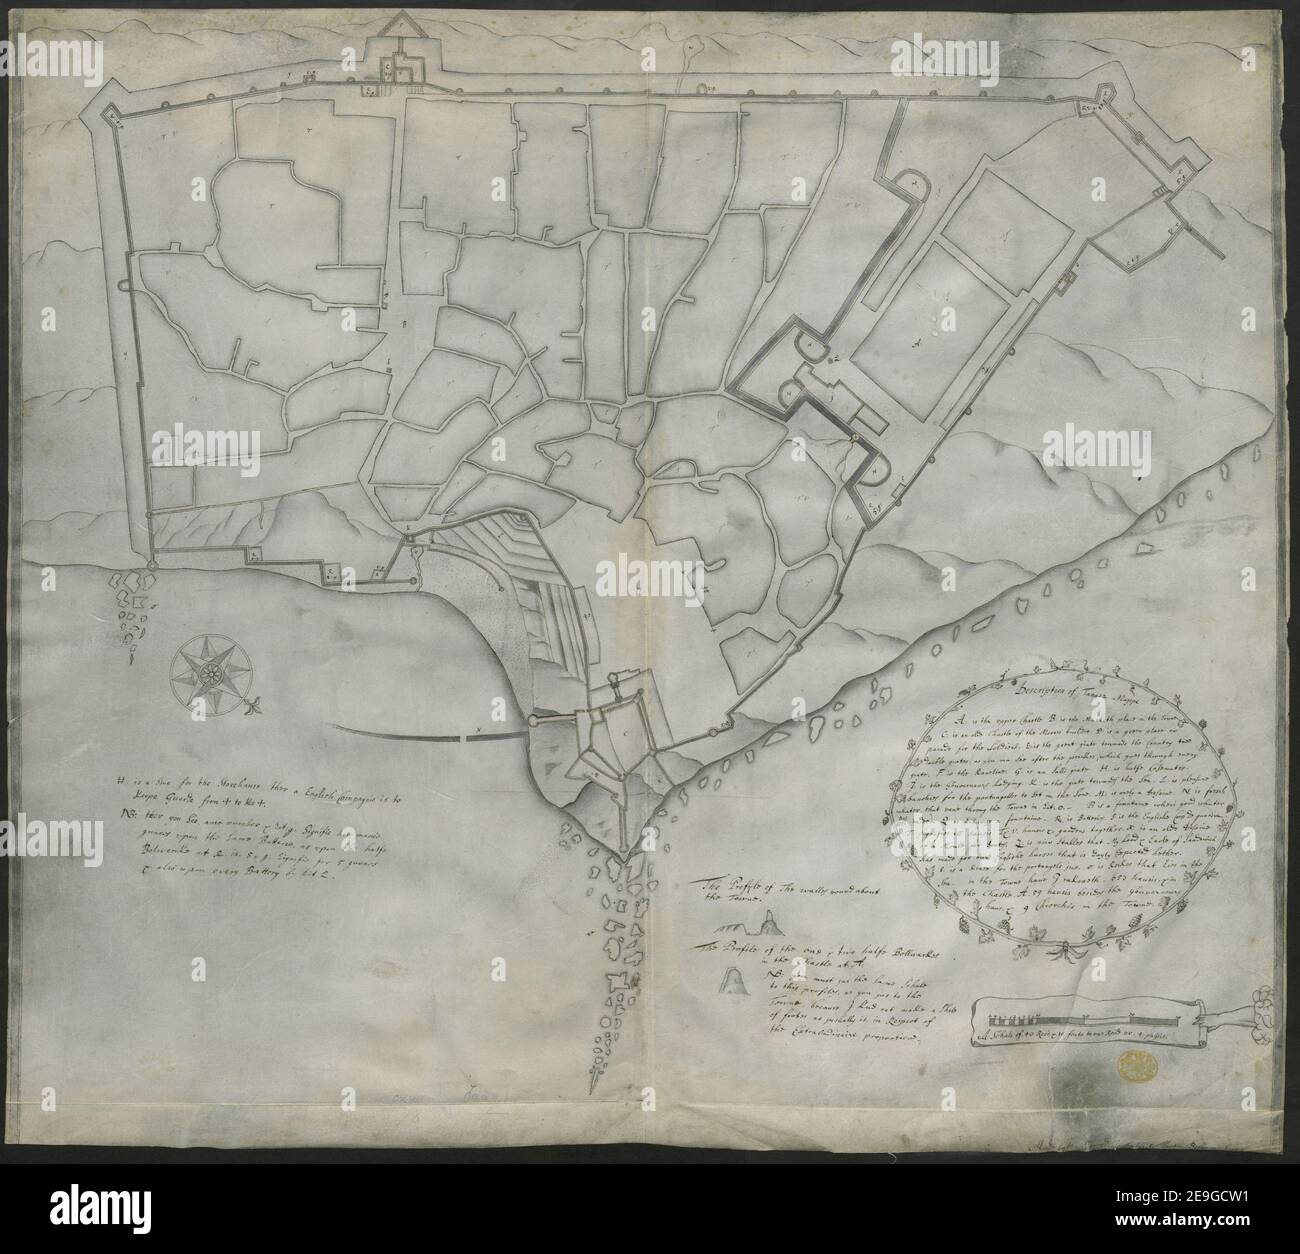 Ein Plan der Stadt Tanger gezeichnet auf Pergament, auf einer Skala von 10  Stäbe, von 10 Fuß jeder, zu einem Zoll. Autor Beckman, Martin 117,78.  Erscheinungsort: [Tanger] Verlag: [Martin Beckman] Erscheinungsdatum:  [1662.]